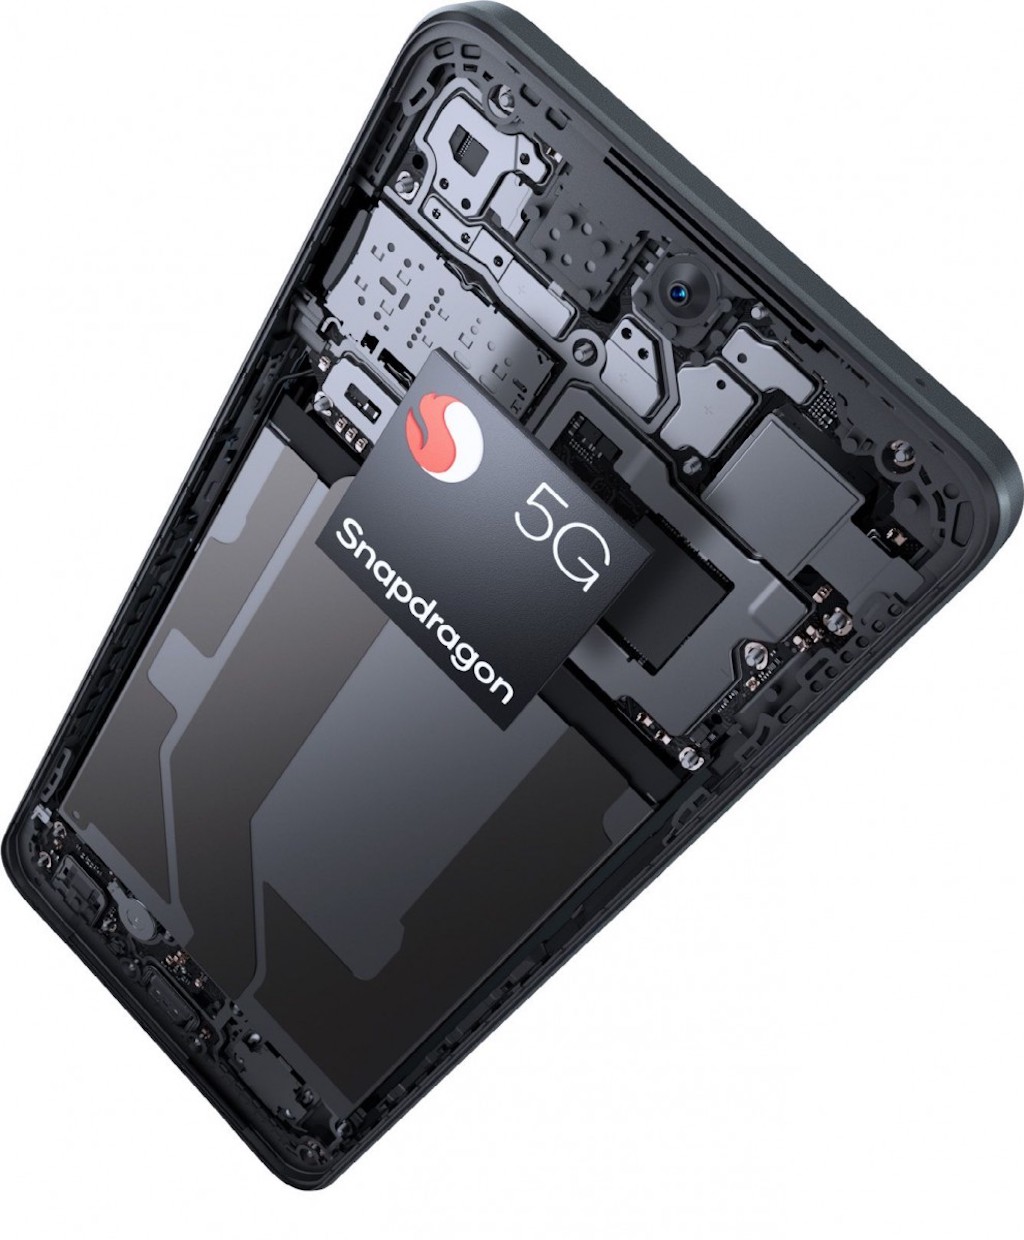 Smartphone hạng trung OnePlus Nord CE 3 Lite xuất hiện, camera xịn nhưng bị kìm hãm bởi chip cũ